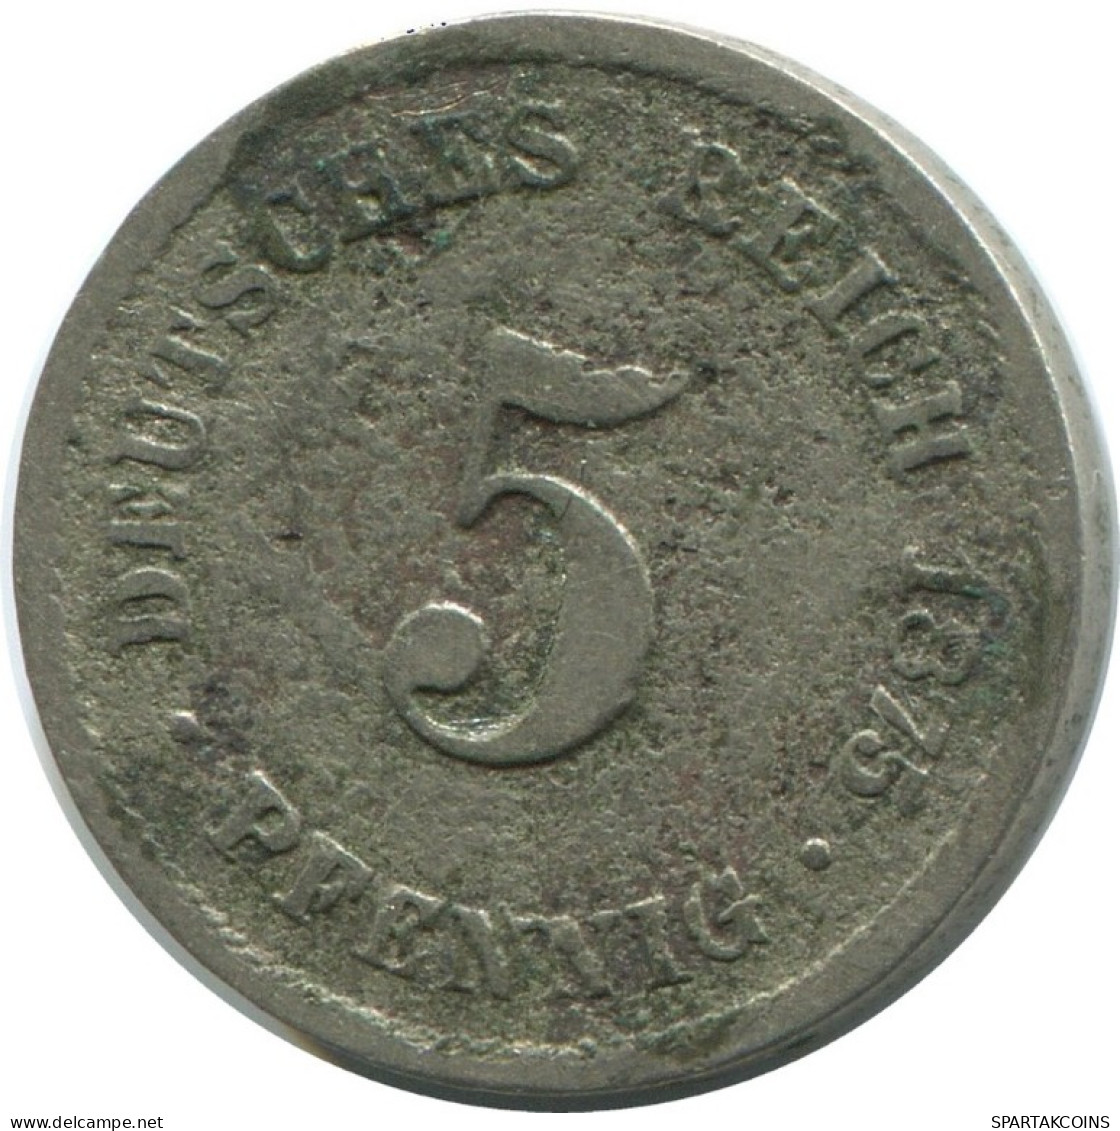 5 PFENNIG 1875 E GERMANY Coin #AE635.U.A - 5 Pfennig